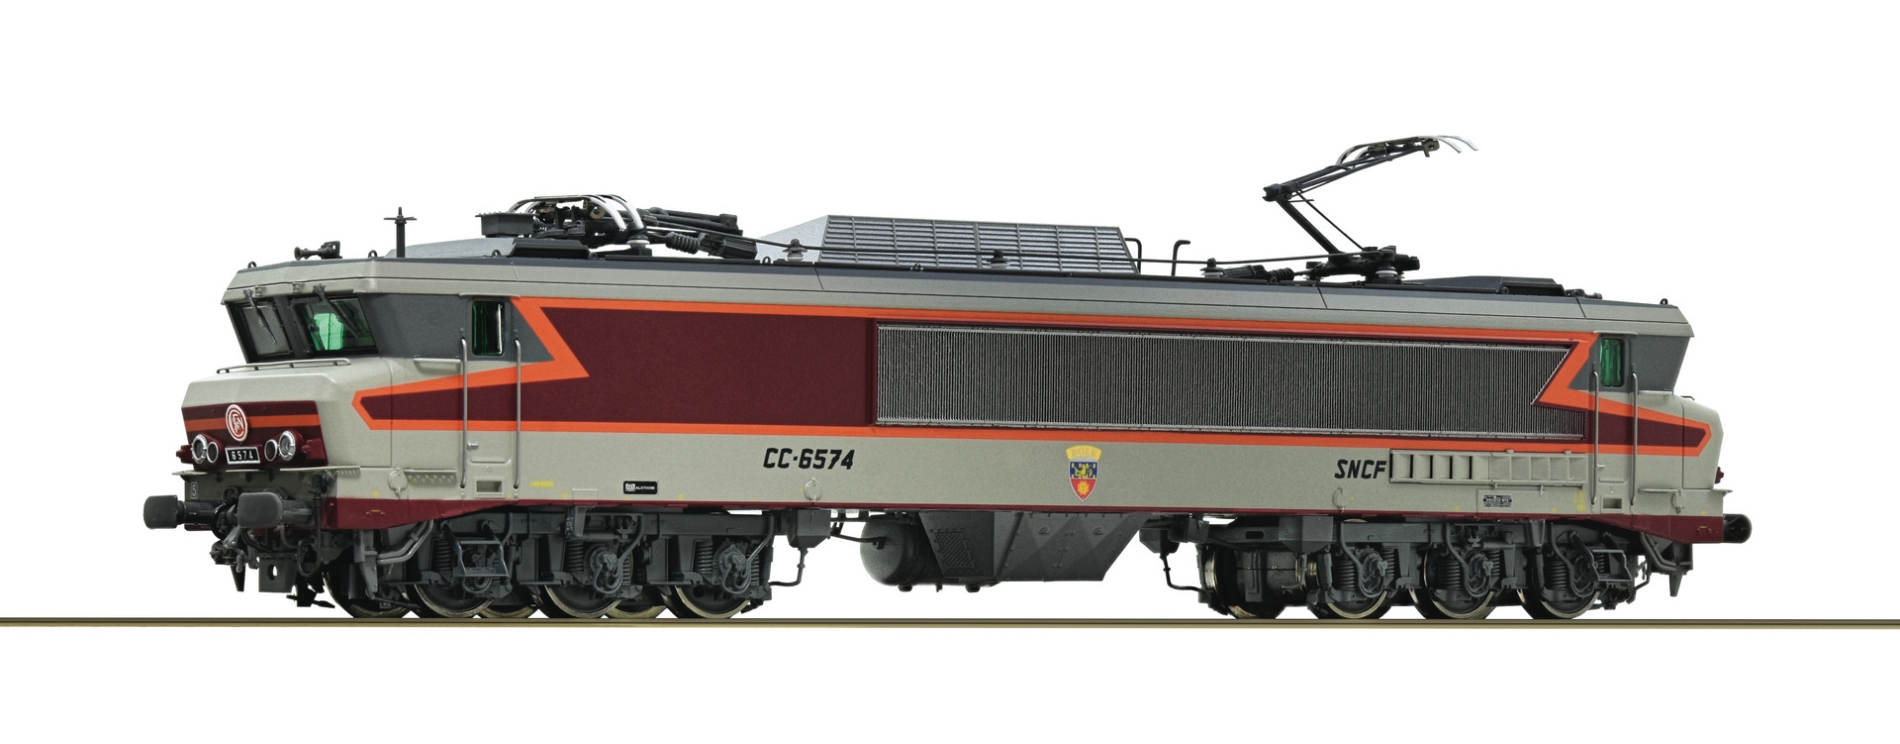 https://www.maurienne-trains.com/images/Image/Locomotive-electrique-CC6574-de-la-SNCF-ROC-70618.jpg